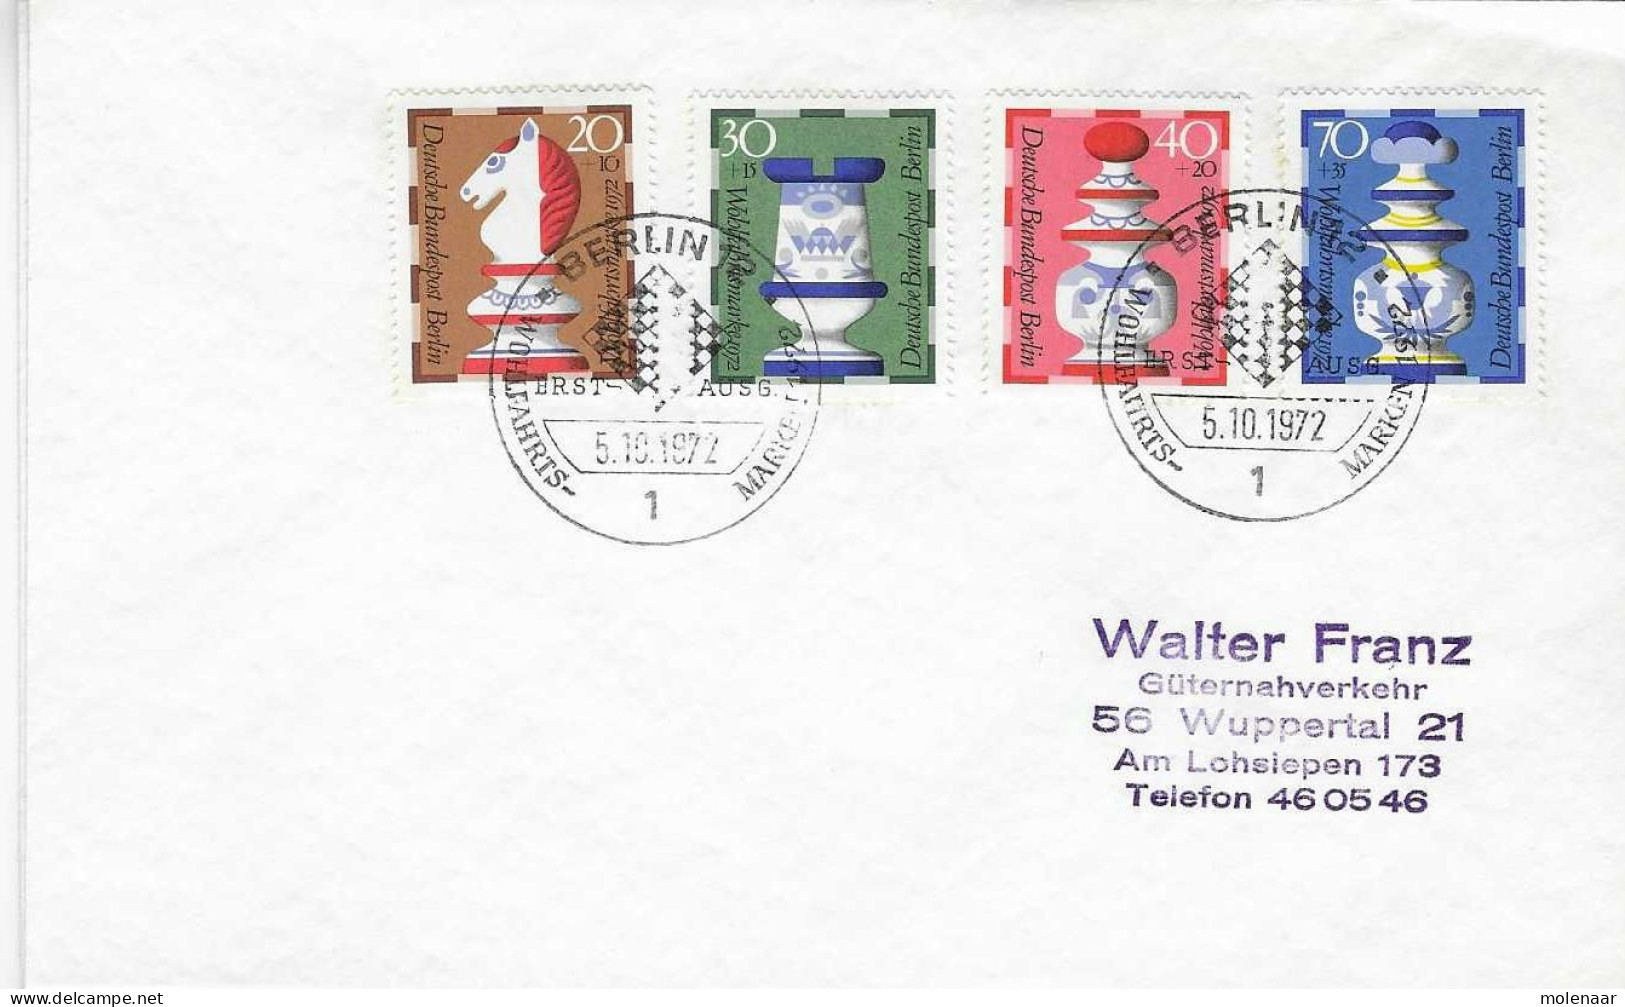 Postzegels > Europa > Duitsland > Berlijn > 1970-1979 > Brief Met 435-438 (17158) - Covers & Documents